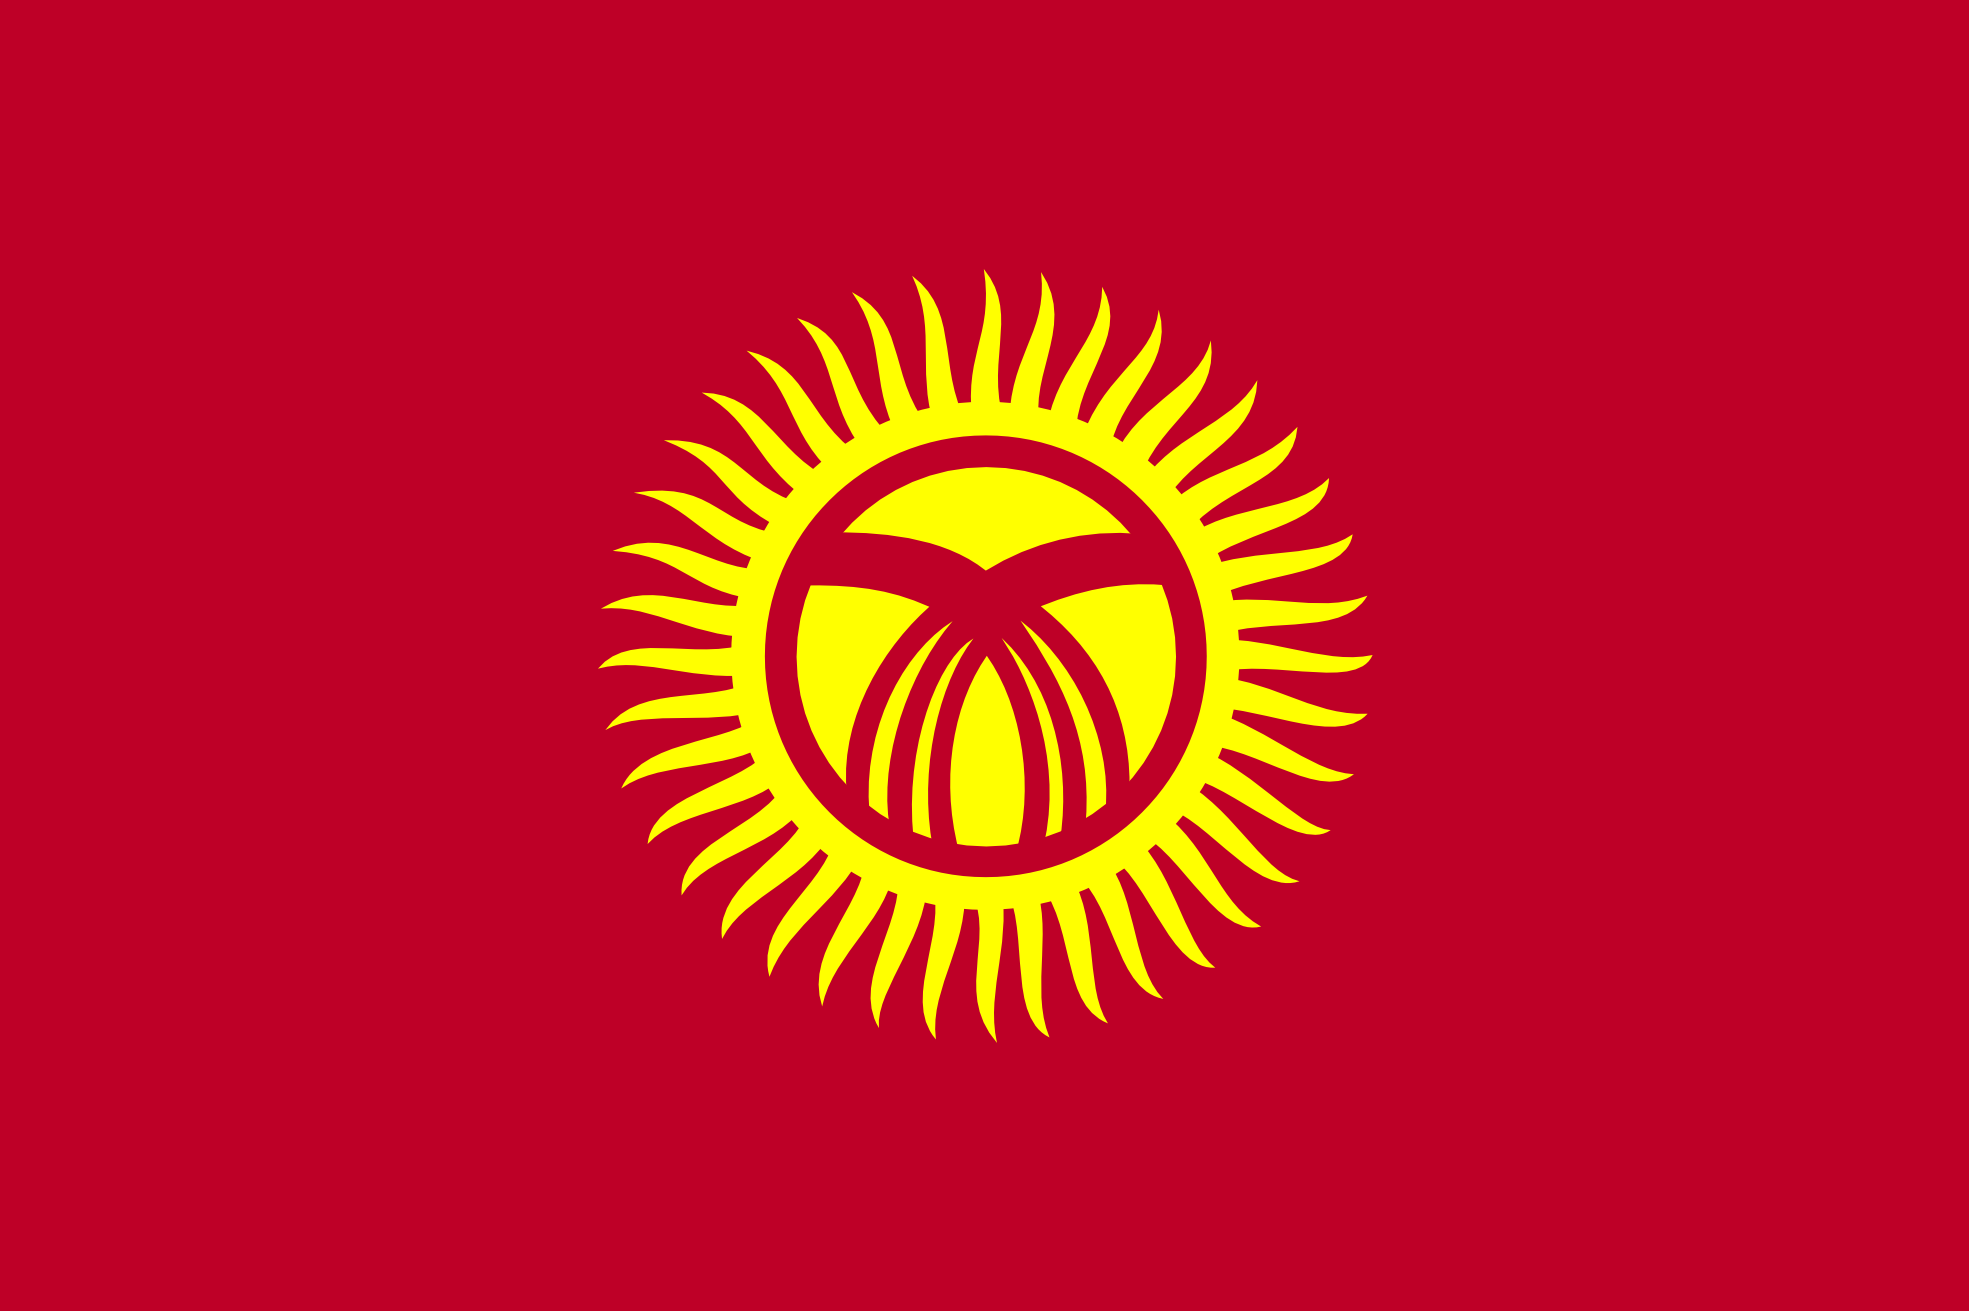 Flaga Kirgistanu